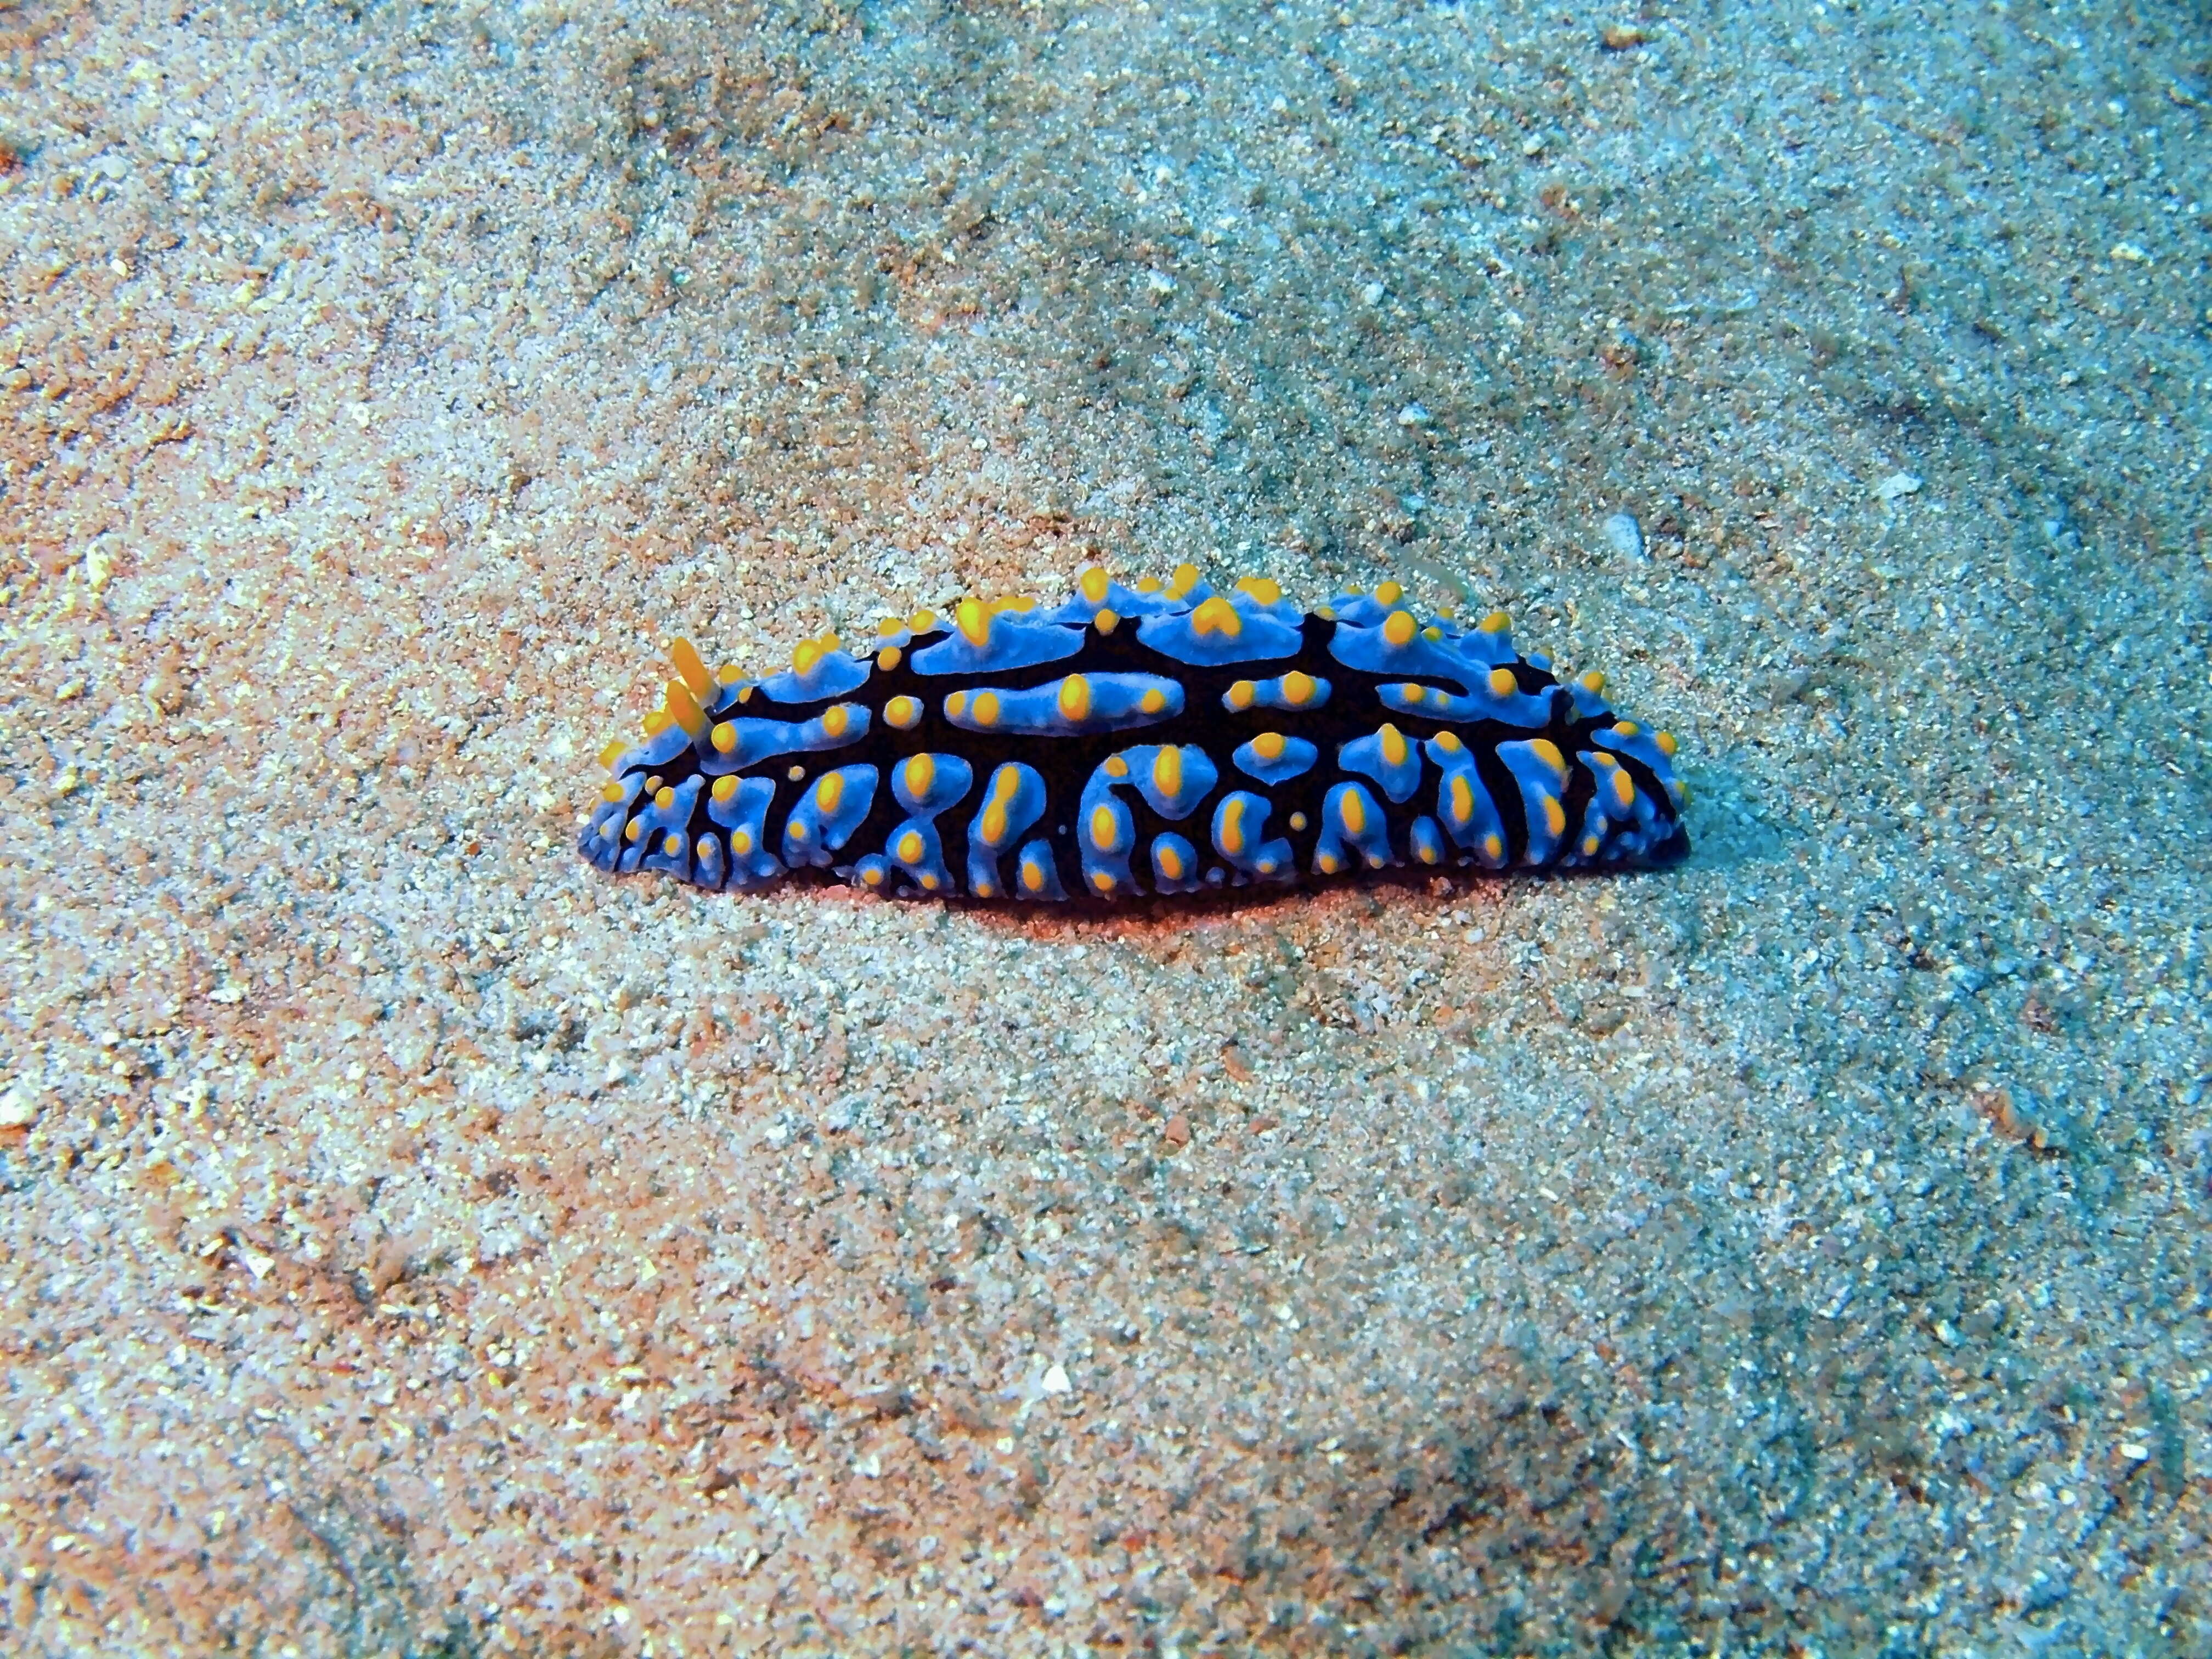 Image of Lumpy black bluegrey orange slug